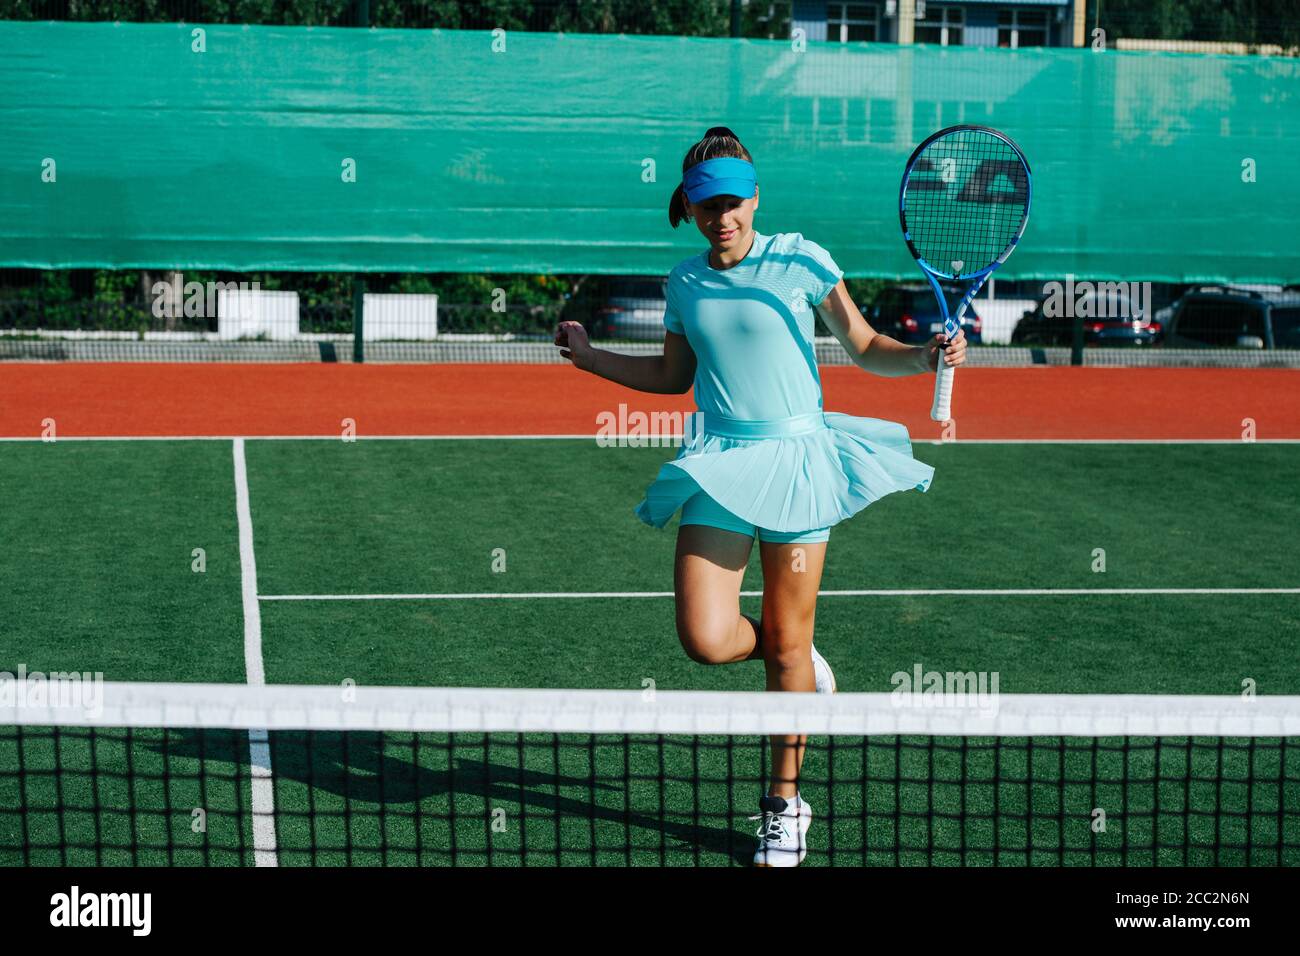 Smiling teenage girl messing around, dancing on tennis court, taking a break Stock Photo